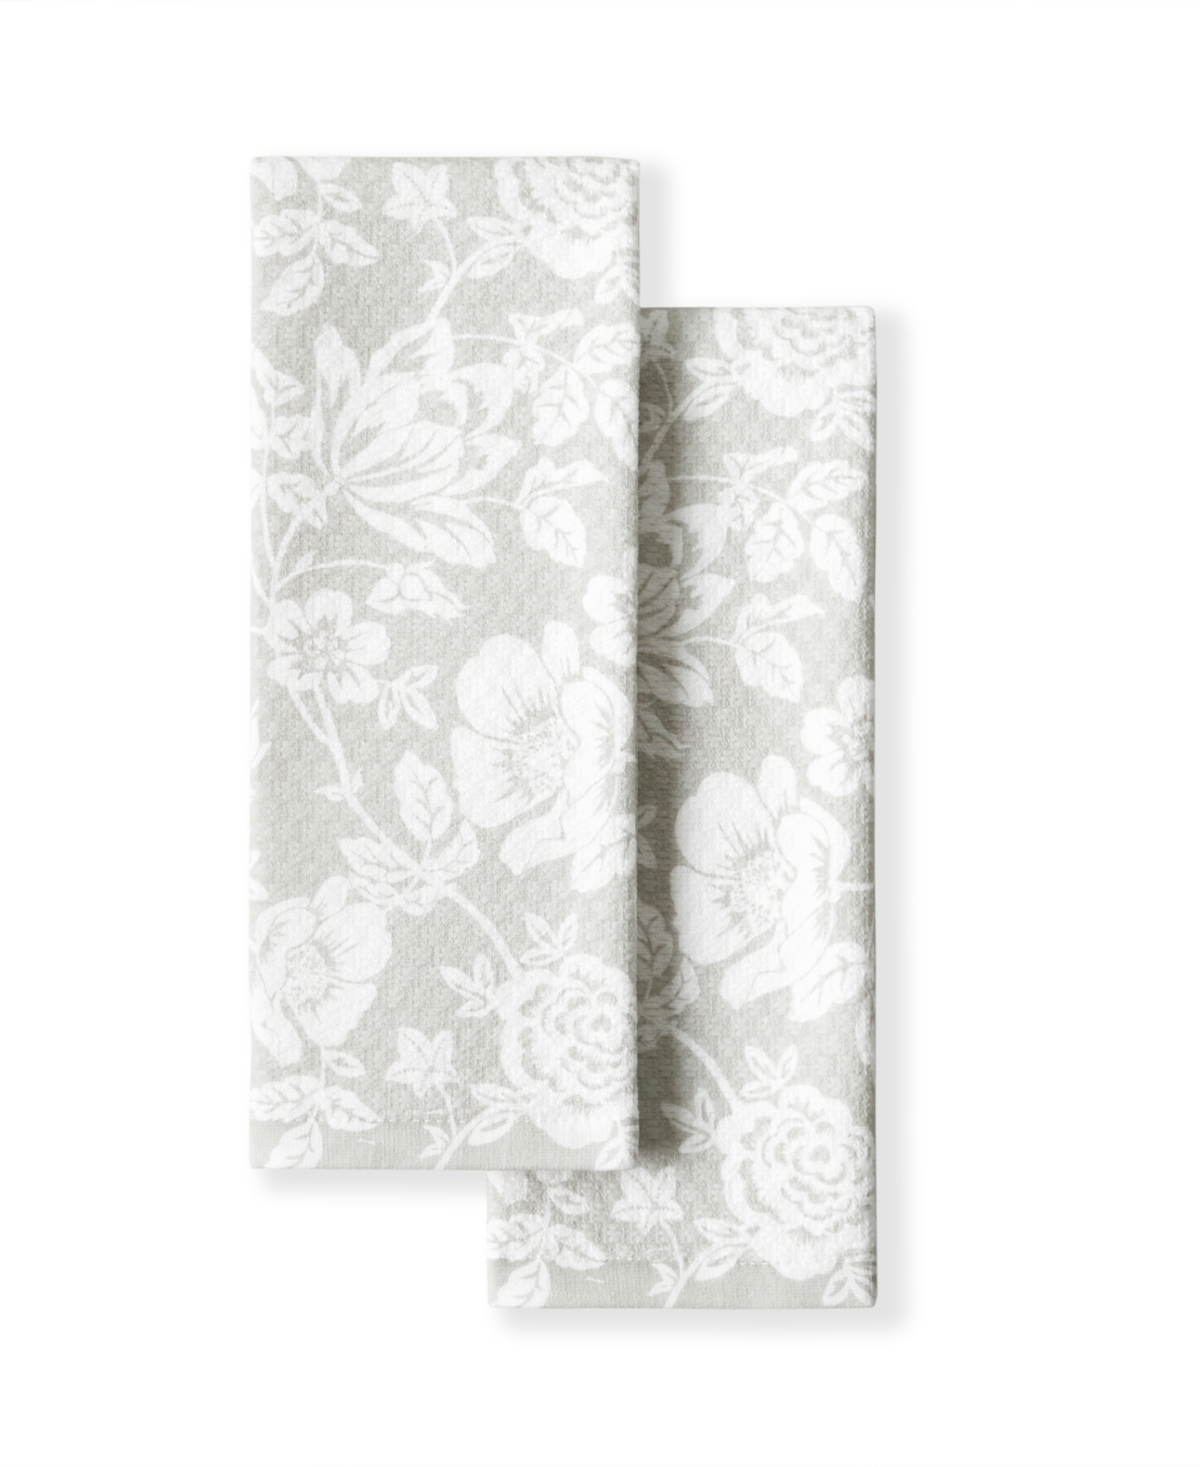 Floral Vine Dual Purpose Kitchen Towel 2-Pack Set, 16" x 28" - Gray